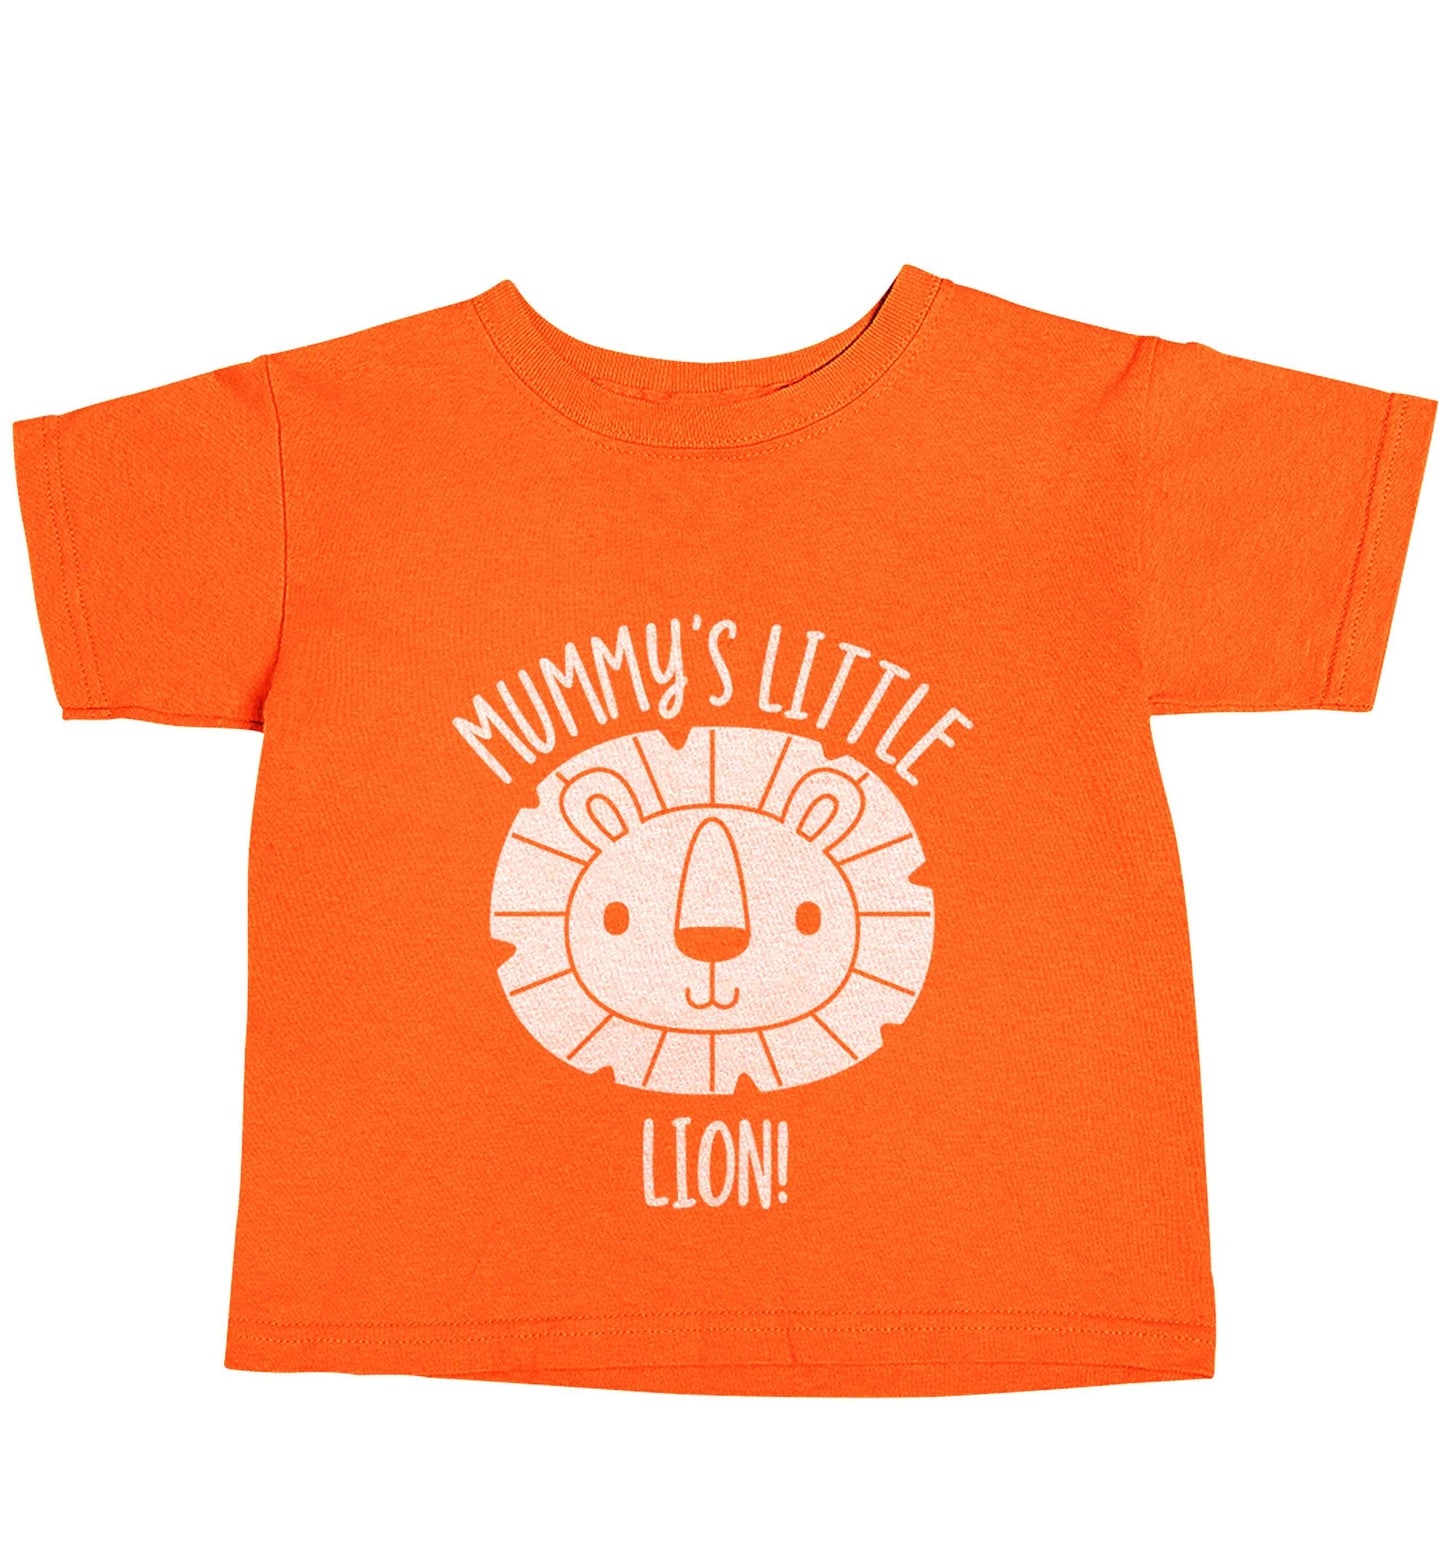 Mummy's little lion orange baby toddler Tshirt 2 Years